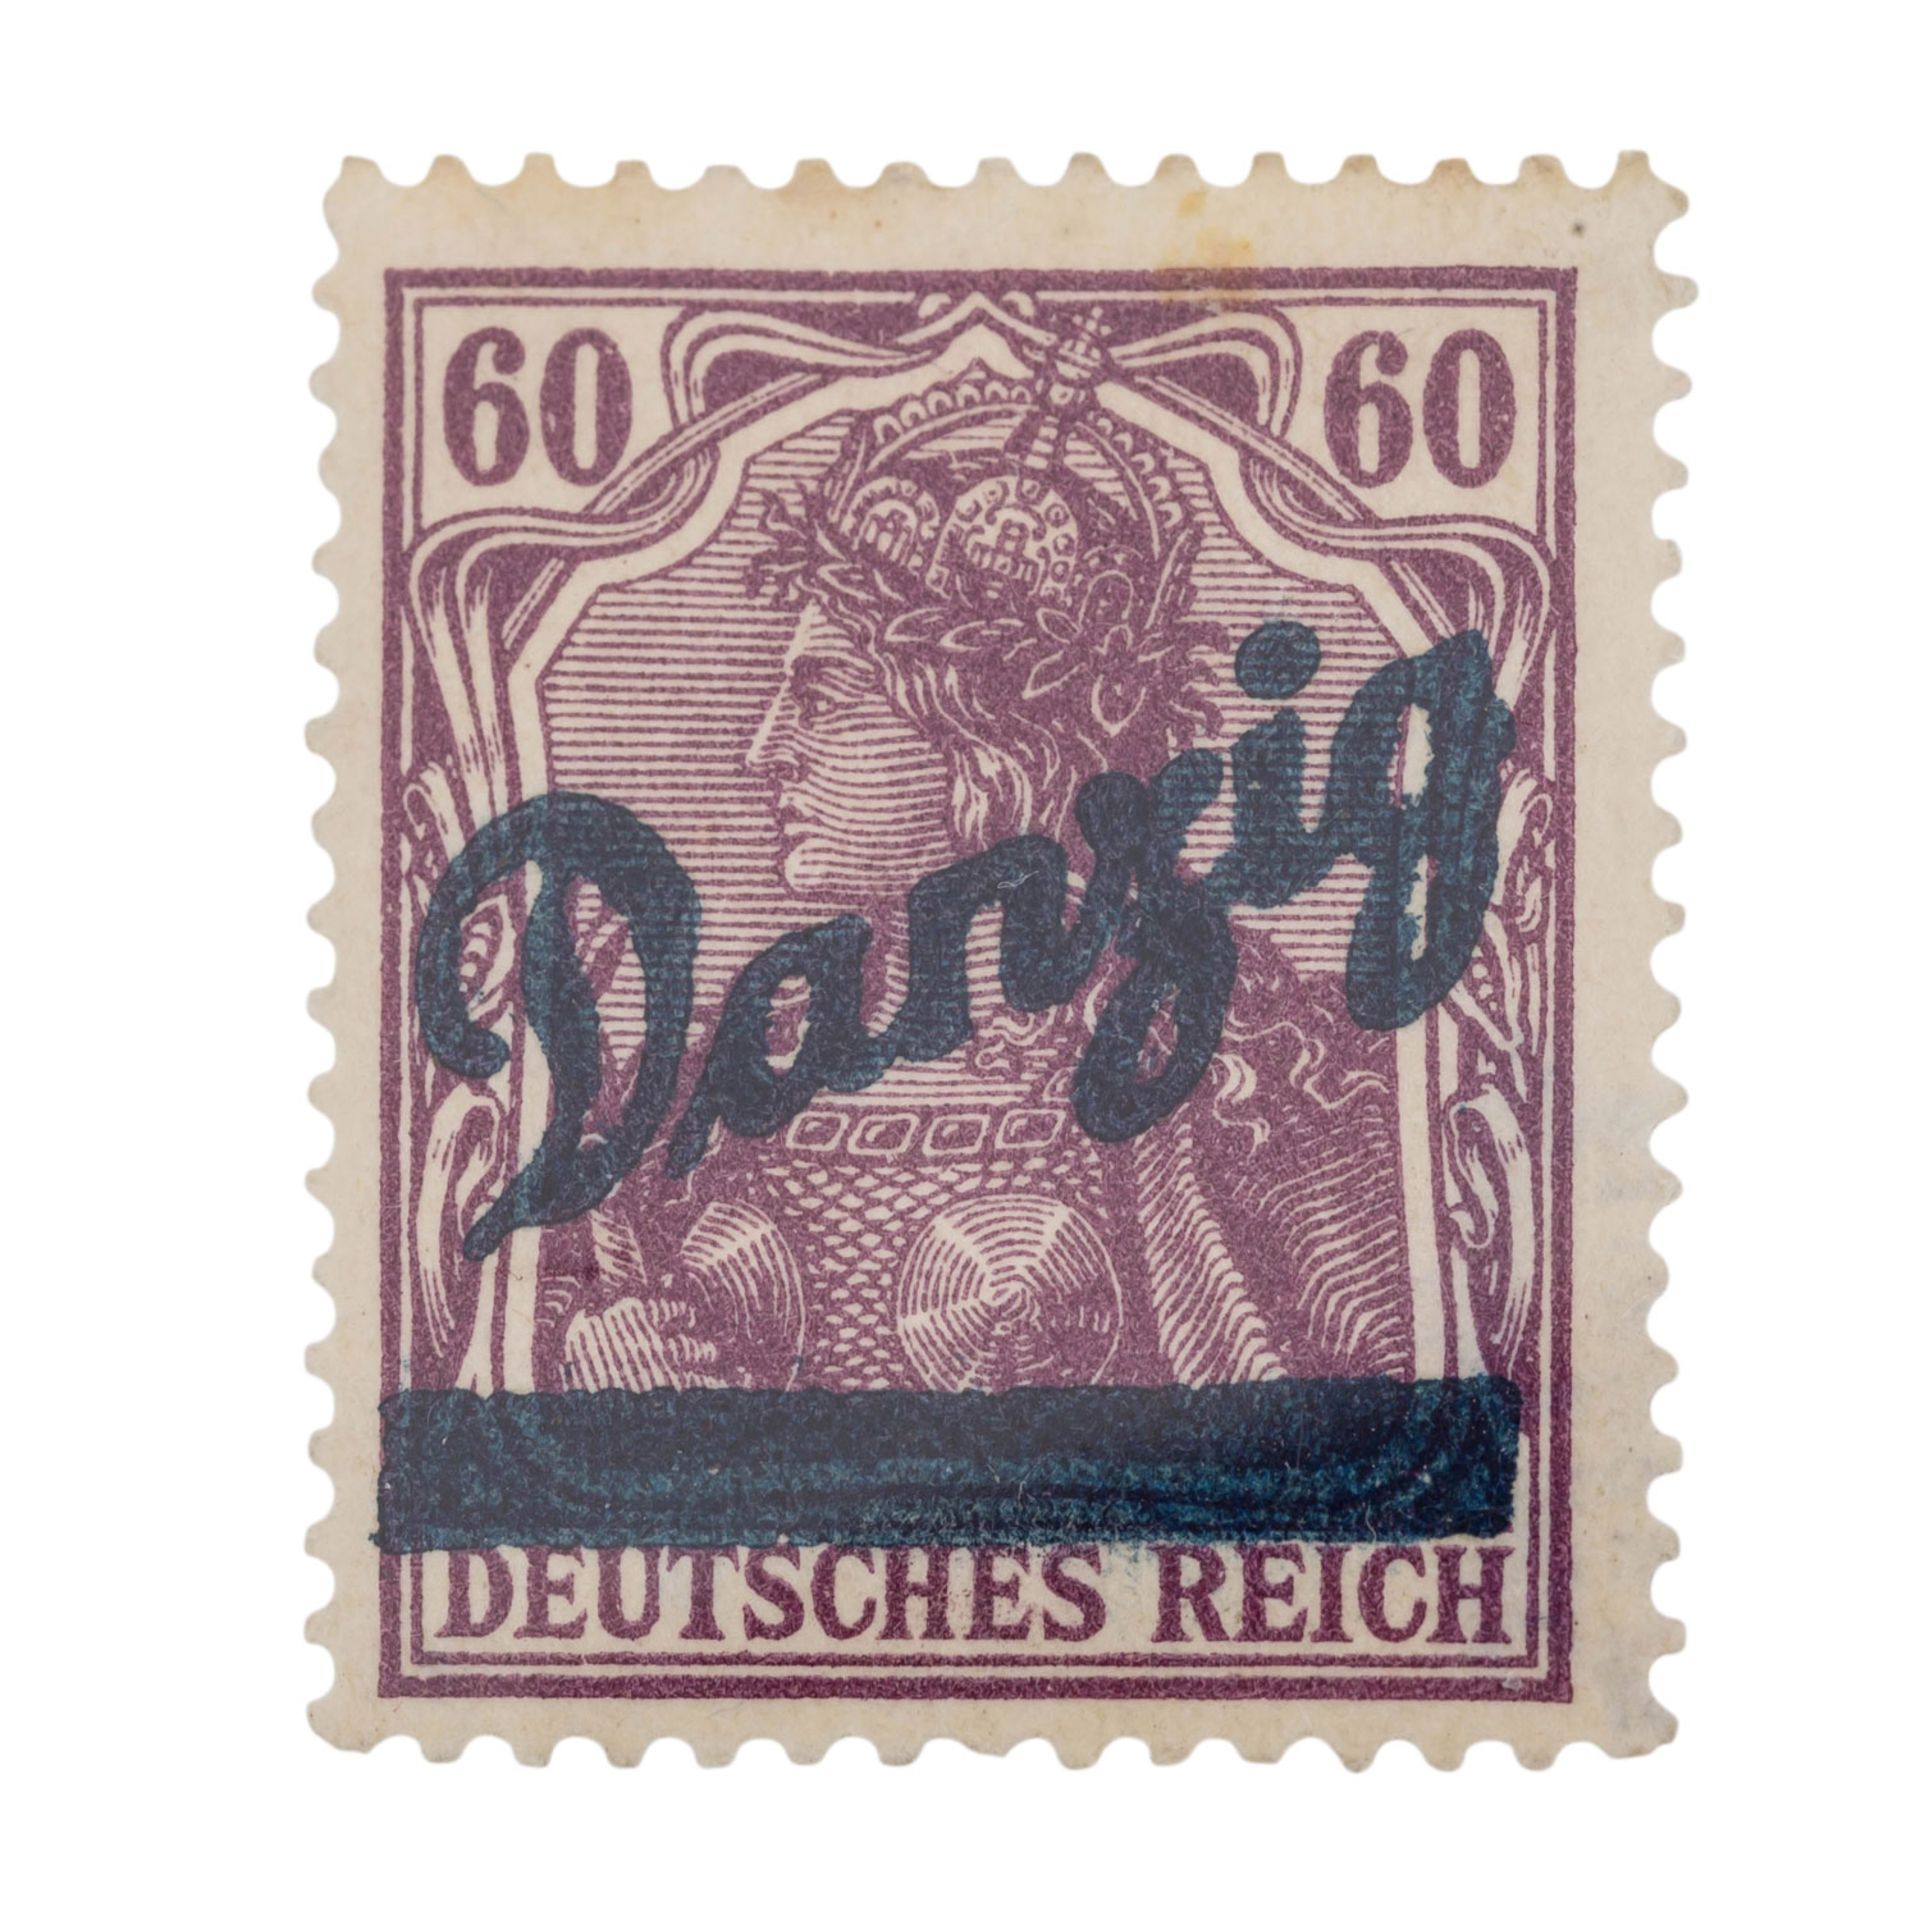 Deutsches Reich / Danzig - So genannter GROßER INNENDIENST, - Image 4 of 5